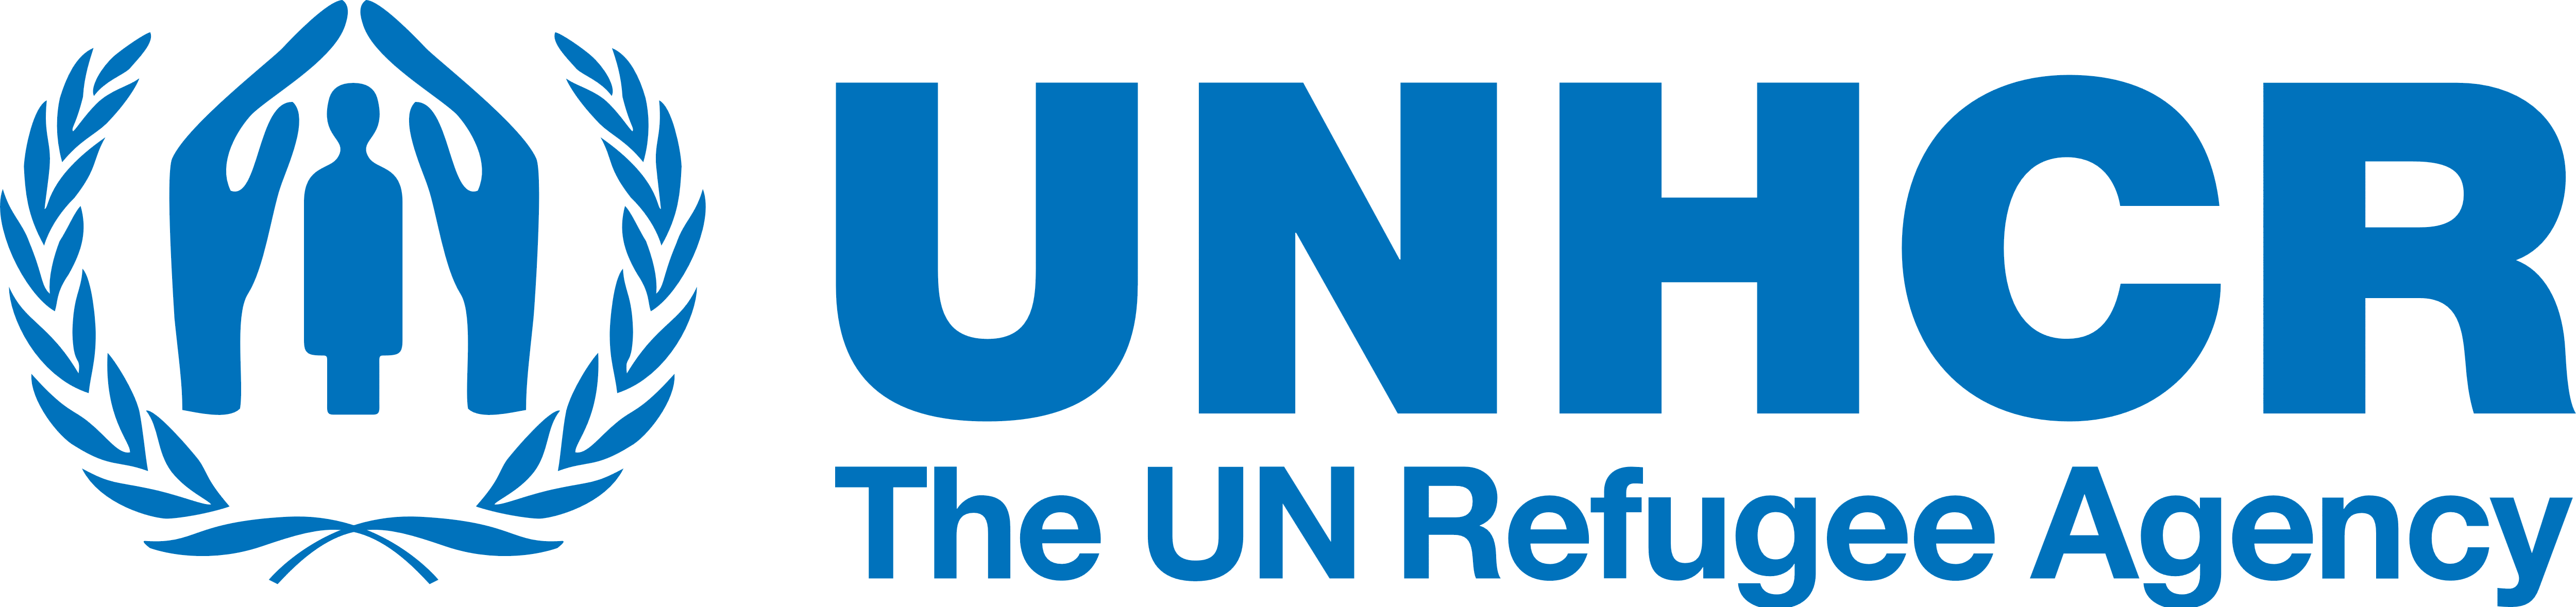 UNHCR Logos Download